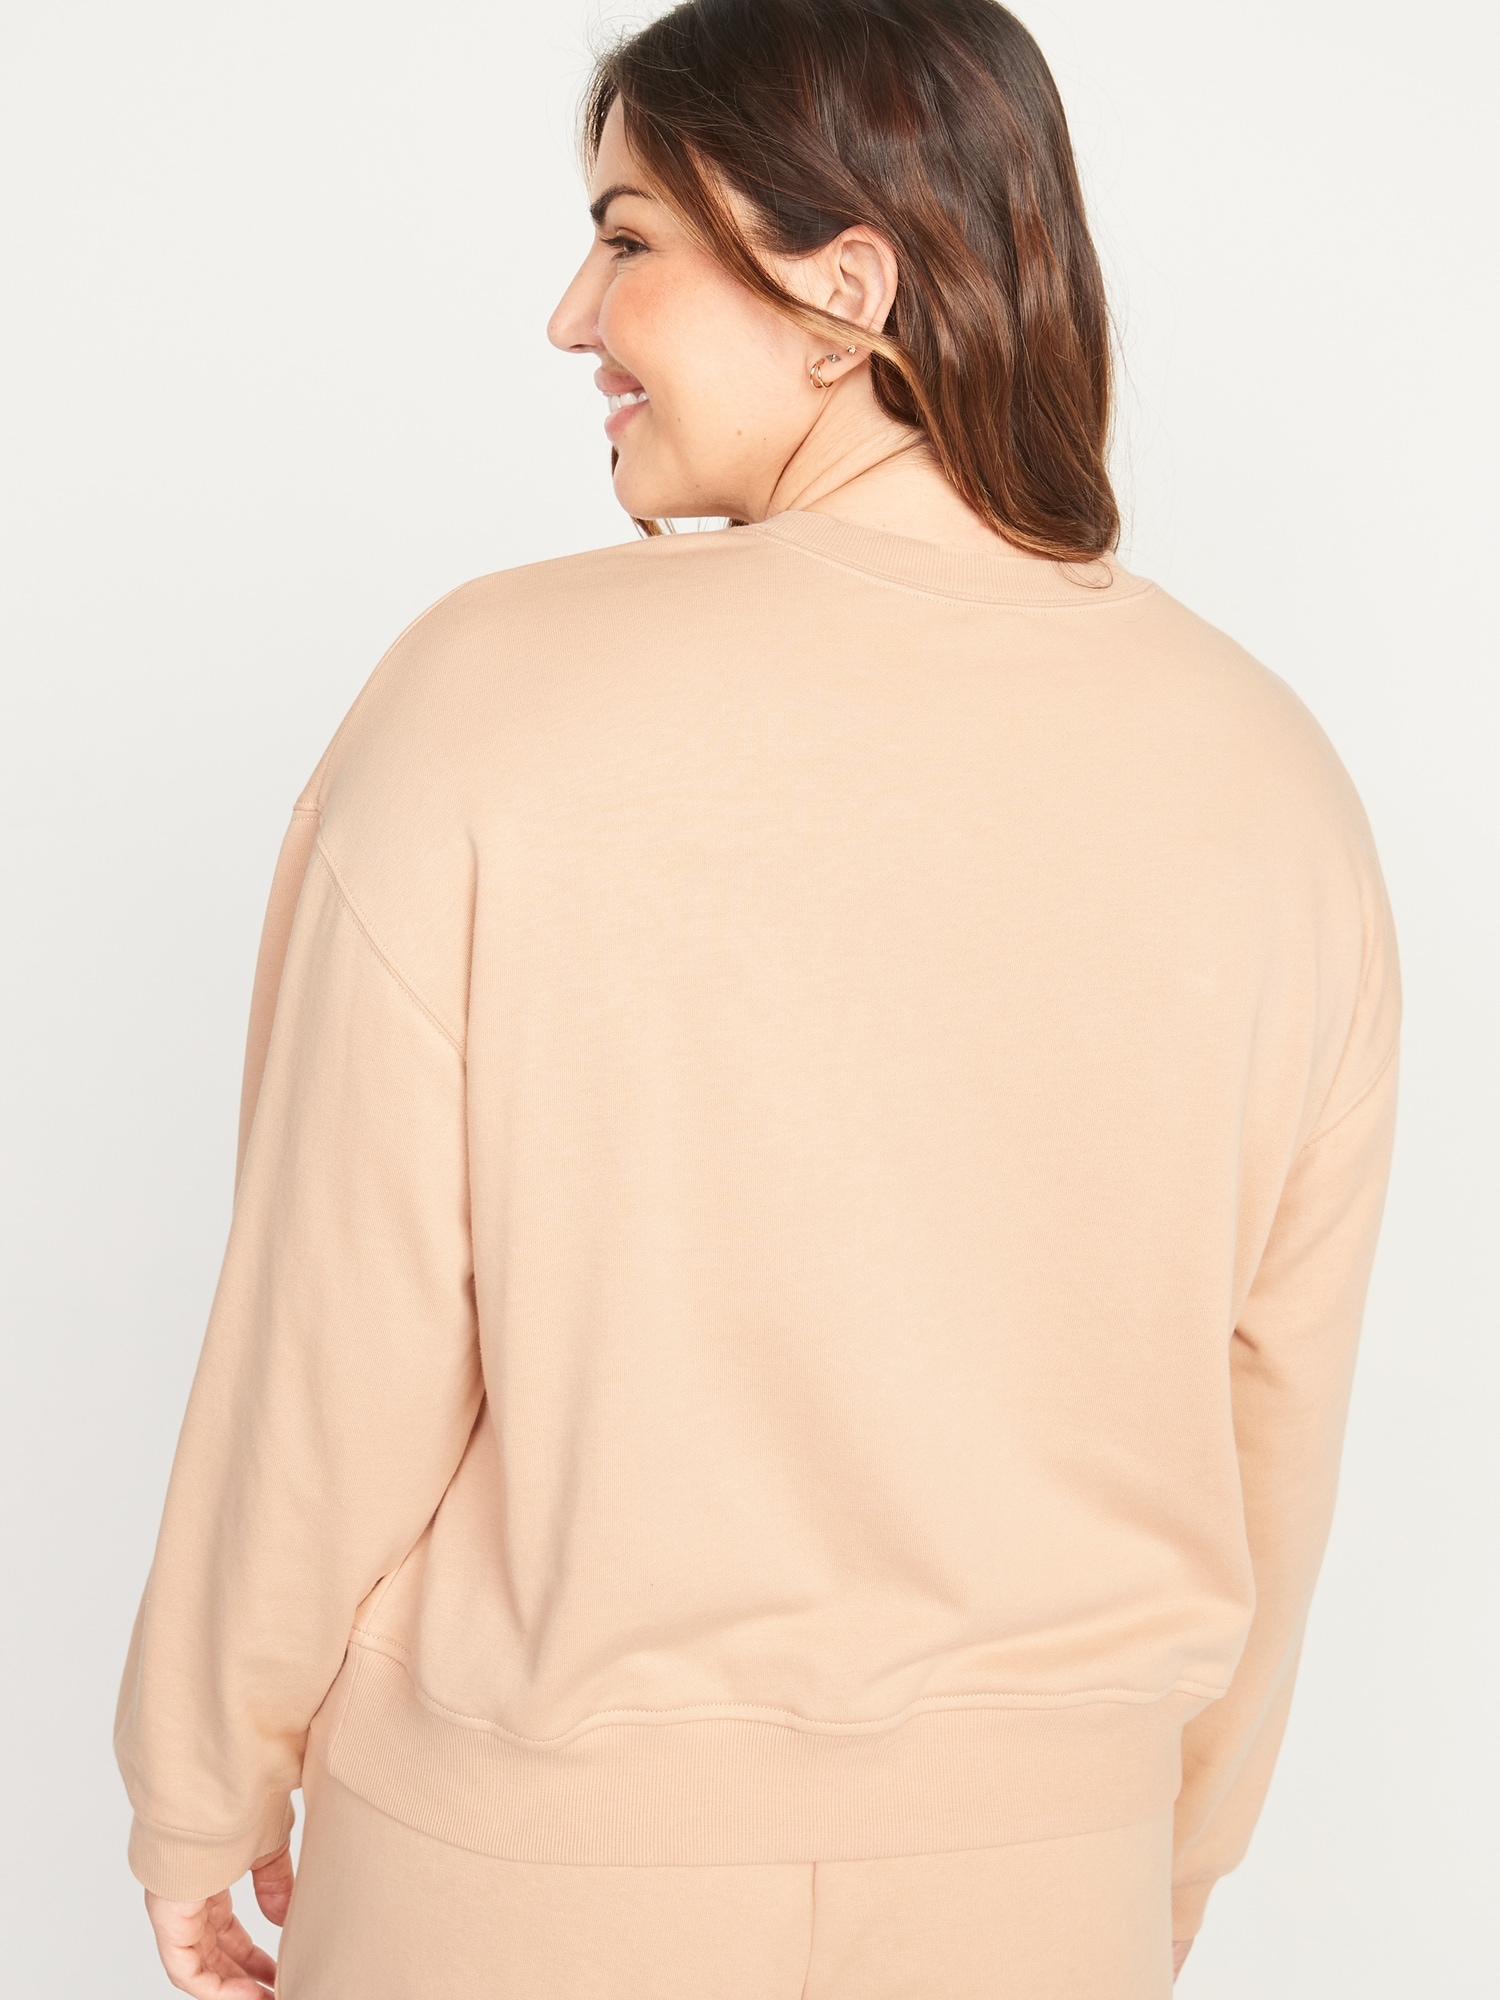 Crop Sweatshirt - Light beige - Ladies